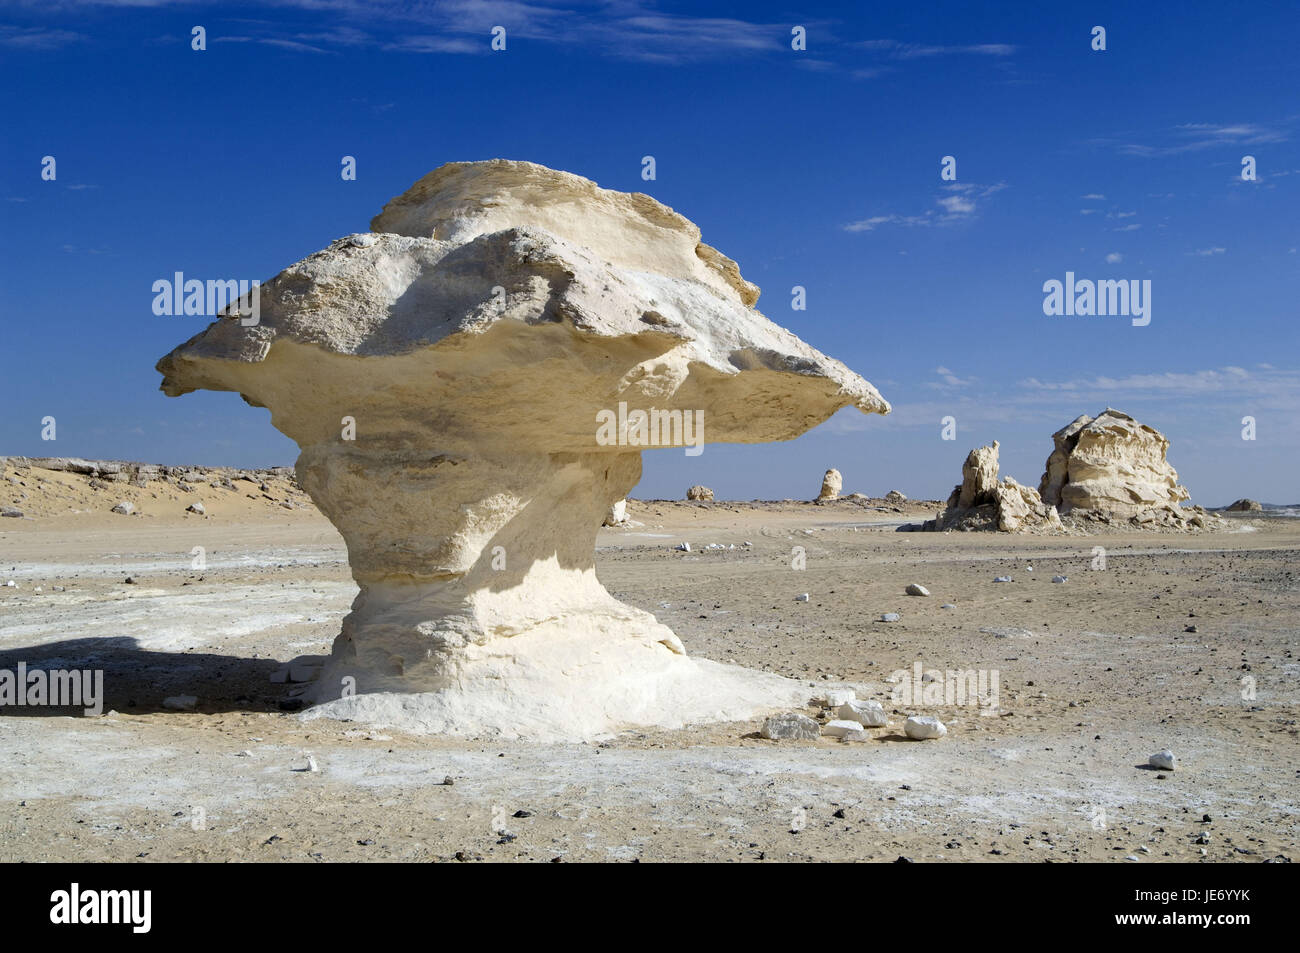 Africa, Egypt, Libyan desert, white desert, rock formations, Stock Photo